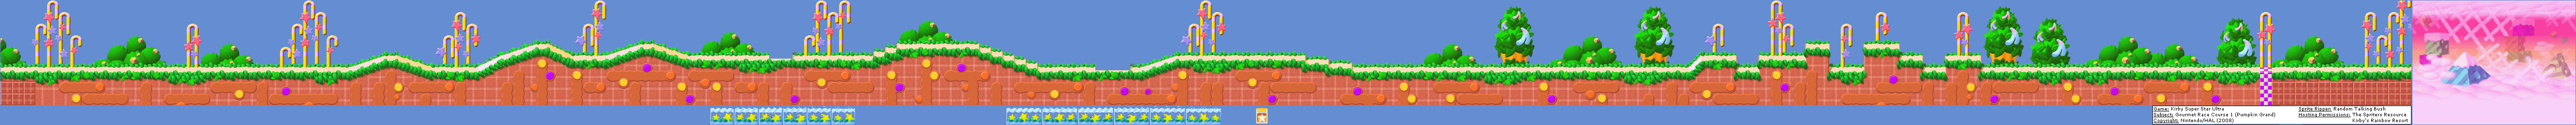 Kirby Super Star Ultra - Stage 1: Pumpkin Grand